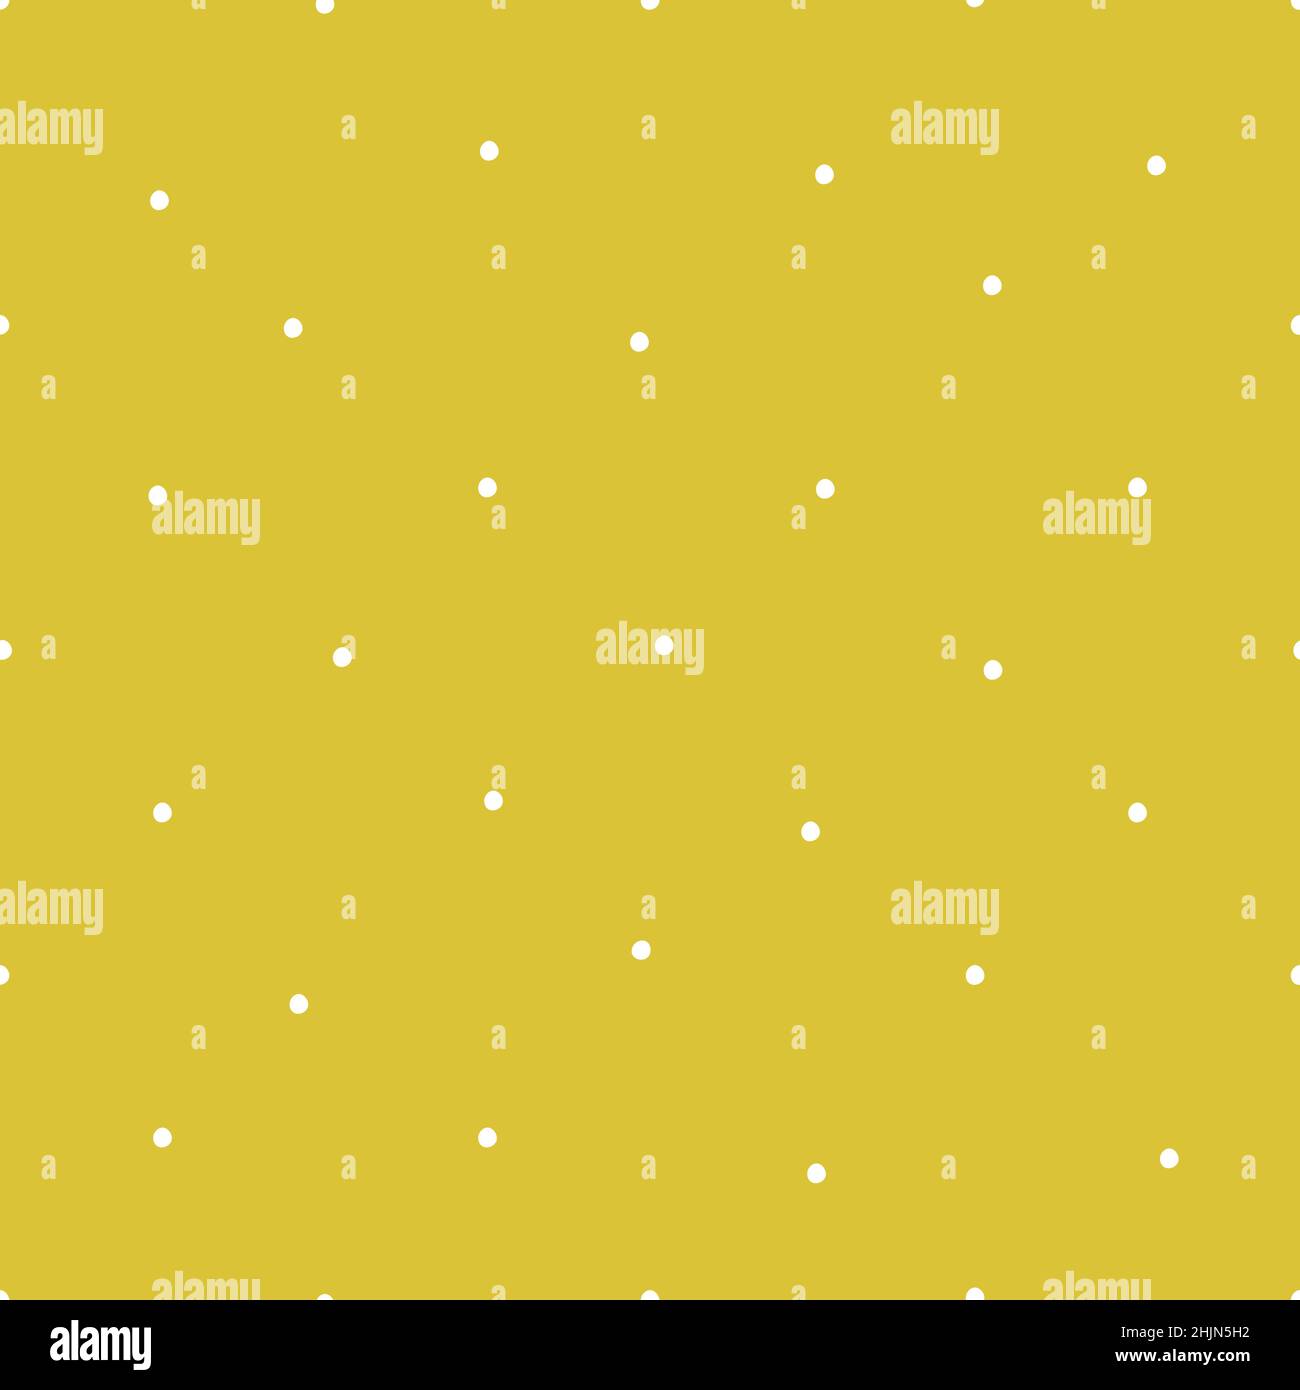 Vektor nahtloses Muster mit flachen Elementen für Weihnachten und Neujahr. Weiße, von Hand gezeichnete Punkte sehen aus wie Schneeflocken auf goldenem (gelbem) Hintergrund. Stock Vektor